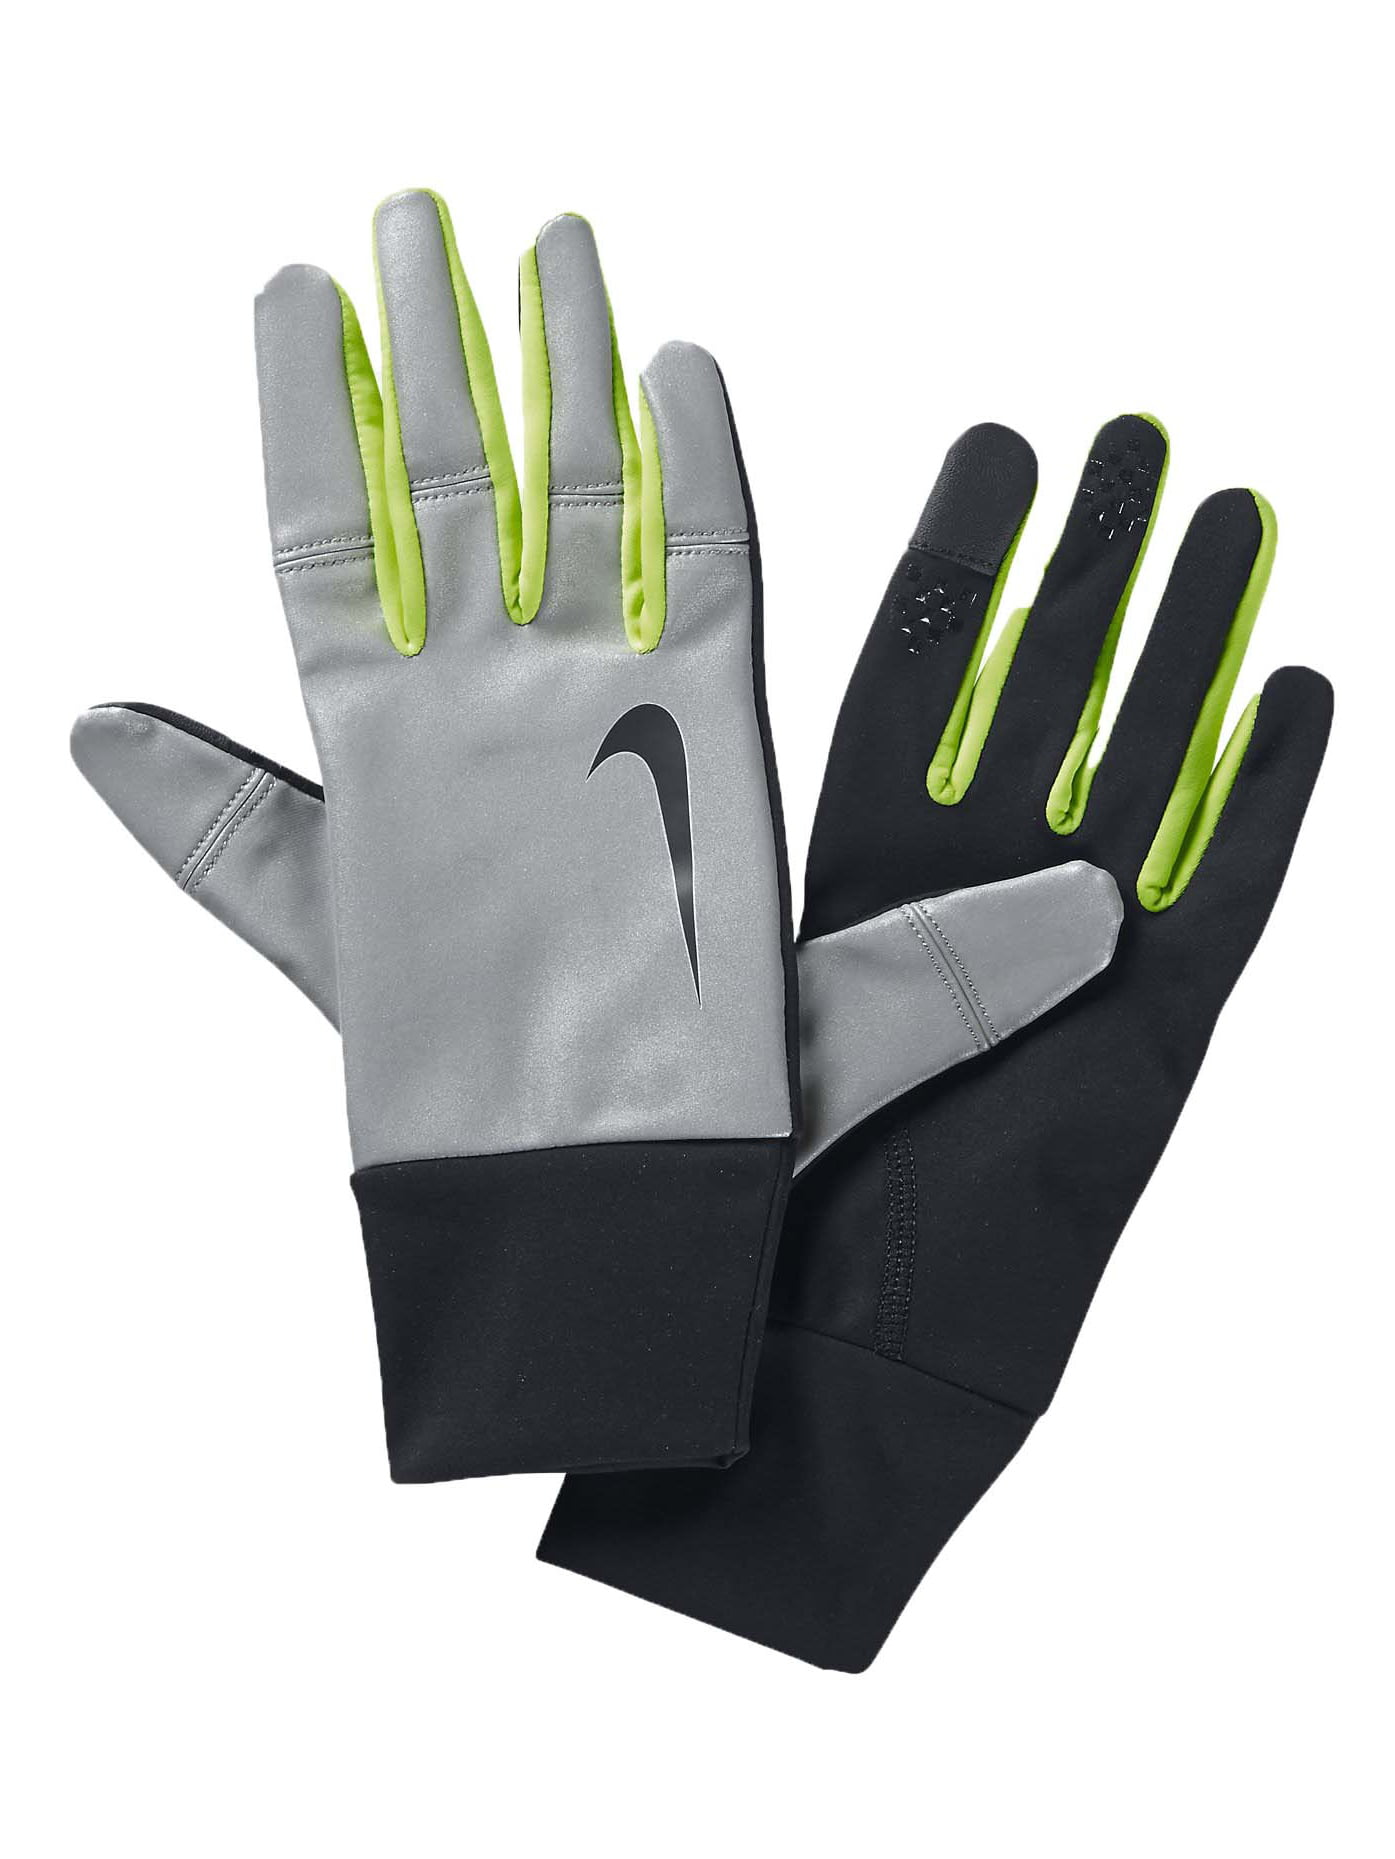 Nike Men's Vapor Flash Running Gloves-Black/Volt - Walmart.com